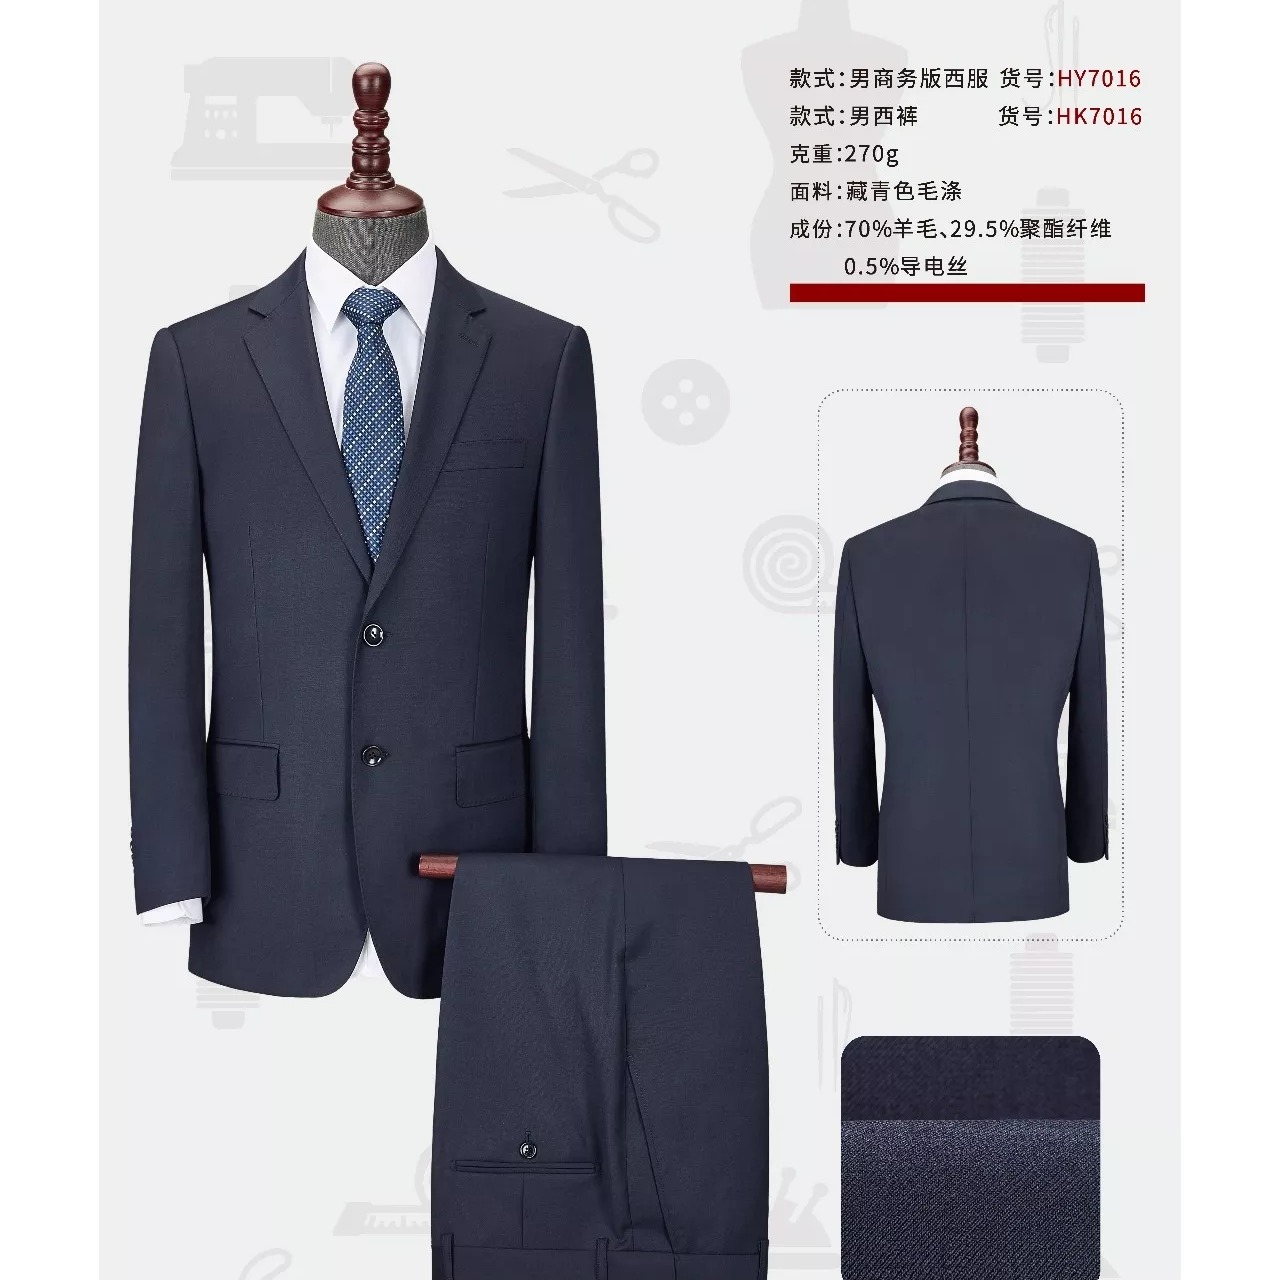 西安职业西装动做 时尚设计 款式新颖 男式西服套装5